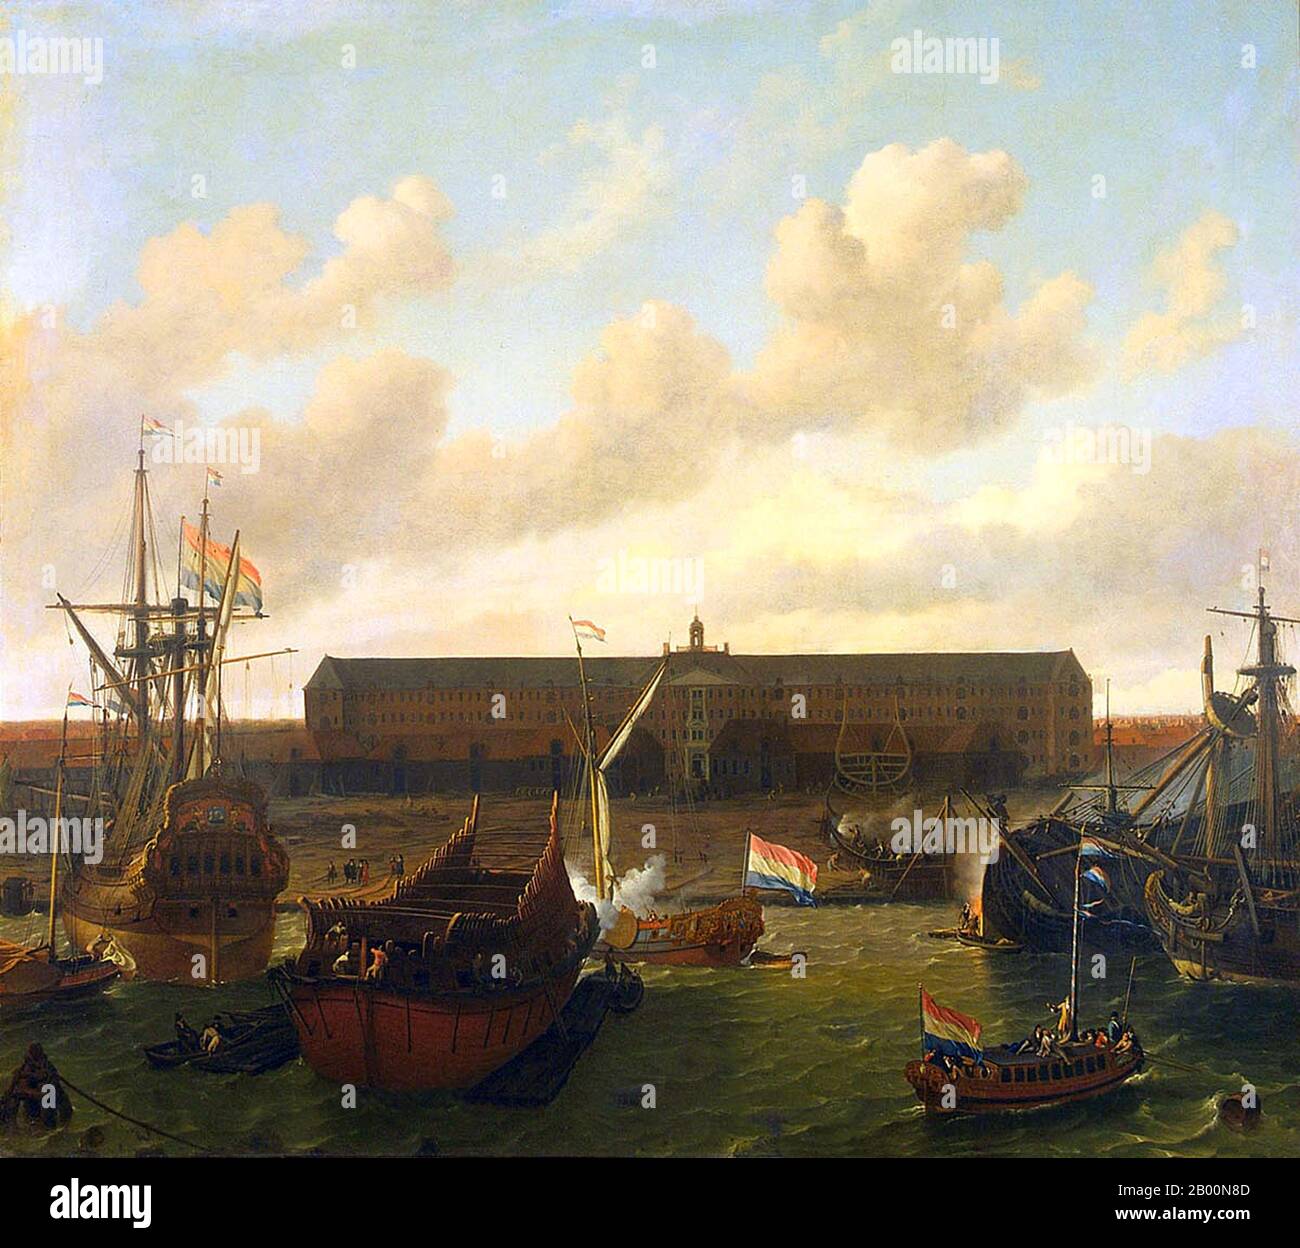 Niederlande: "Das Dock der Dutch East India Company in Amsterdam". Öl auf Leinwand Gemälde von Ludolf Bakhuizen (1630-1708), 1696. Die Dutch East India Company (Vereenigde Oost-Indische Compagnie oder VOC auf Niederländisch, wörtlich "United East Indian Company") war eine gecharterte Firma, die 1602 gegründet wurde, als die Generalstaaten der Niederlande ihr ein 21-jähriges Monopol zur Durchführung kolonialer Aktivitäten in Asien gewährten. Es war das erste multinationale Unternehmen der Welt und das erste Unternehmen, das Aktien aufgab. Es war wohl auch die erste Megakorporation, die quasi-staatliche Befugnisse besaß. Stockfoto